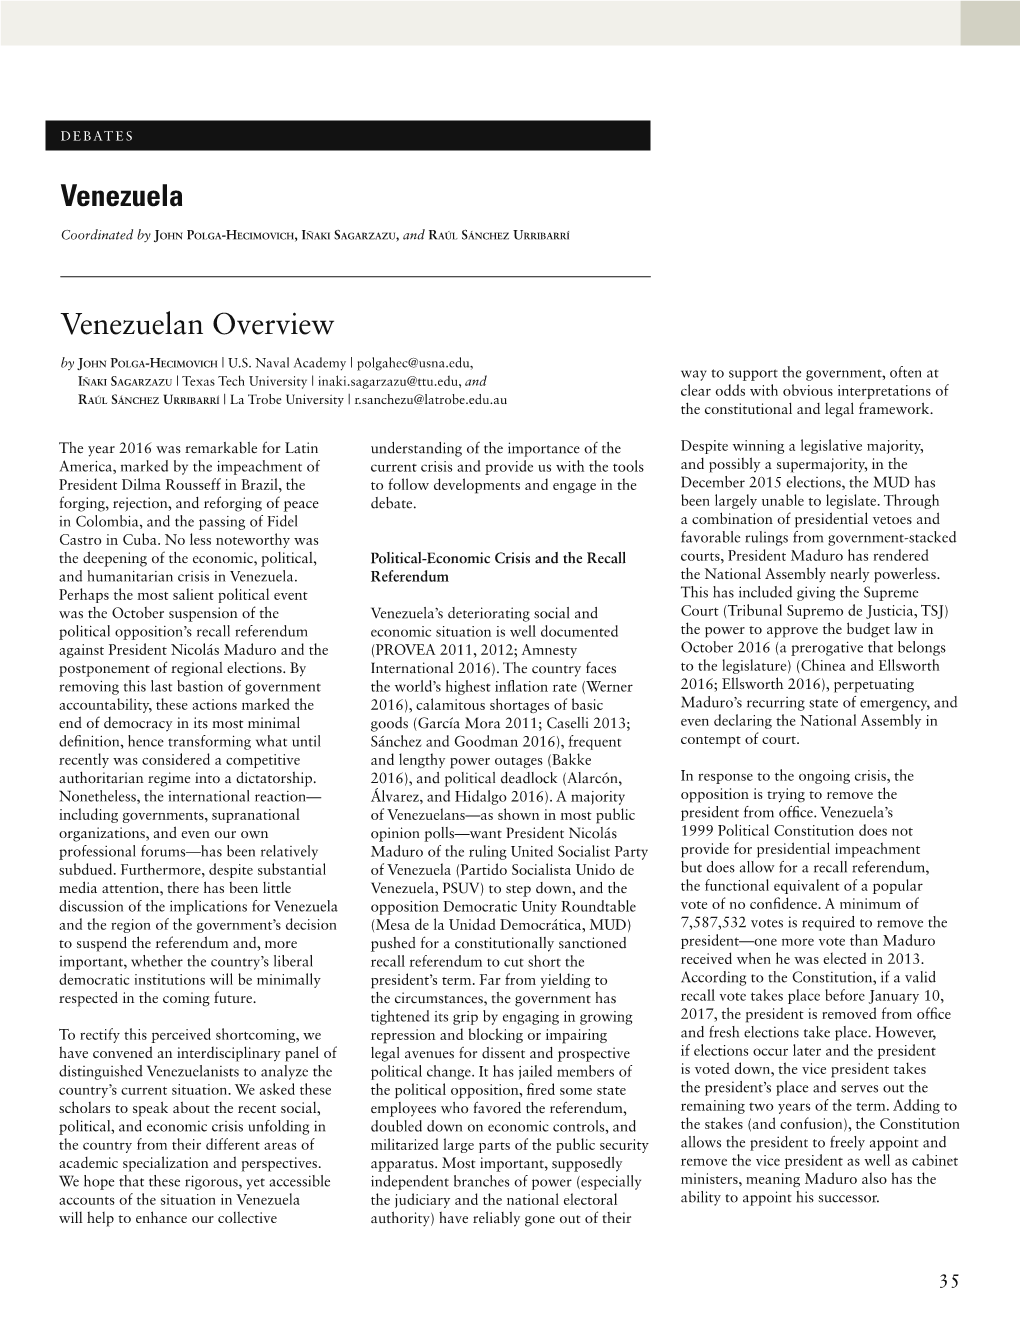 Venezuelan Overview Venezuela